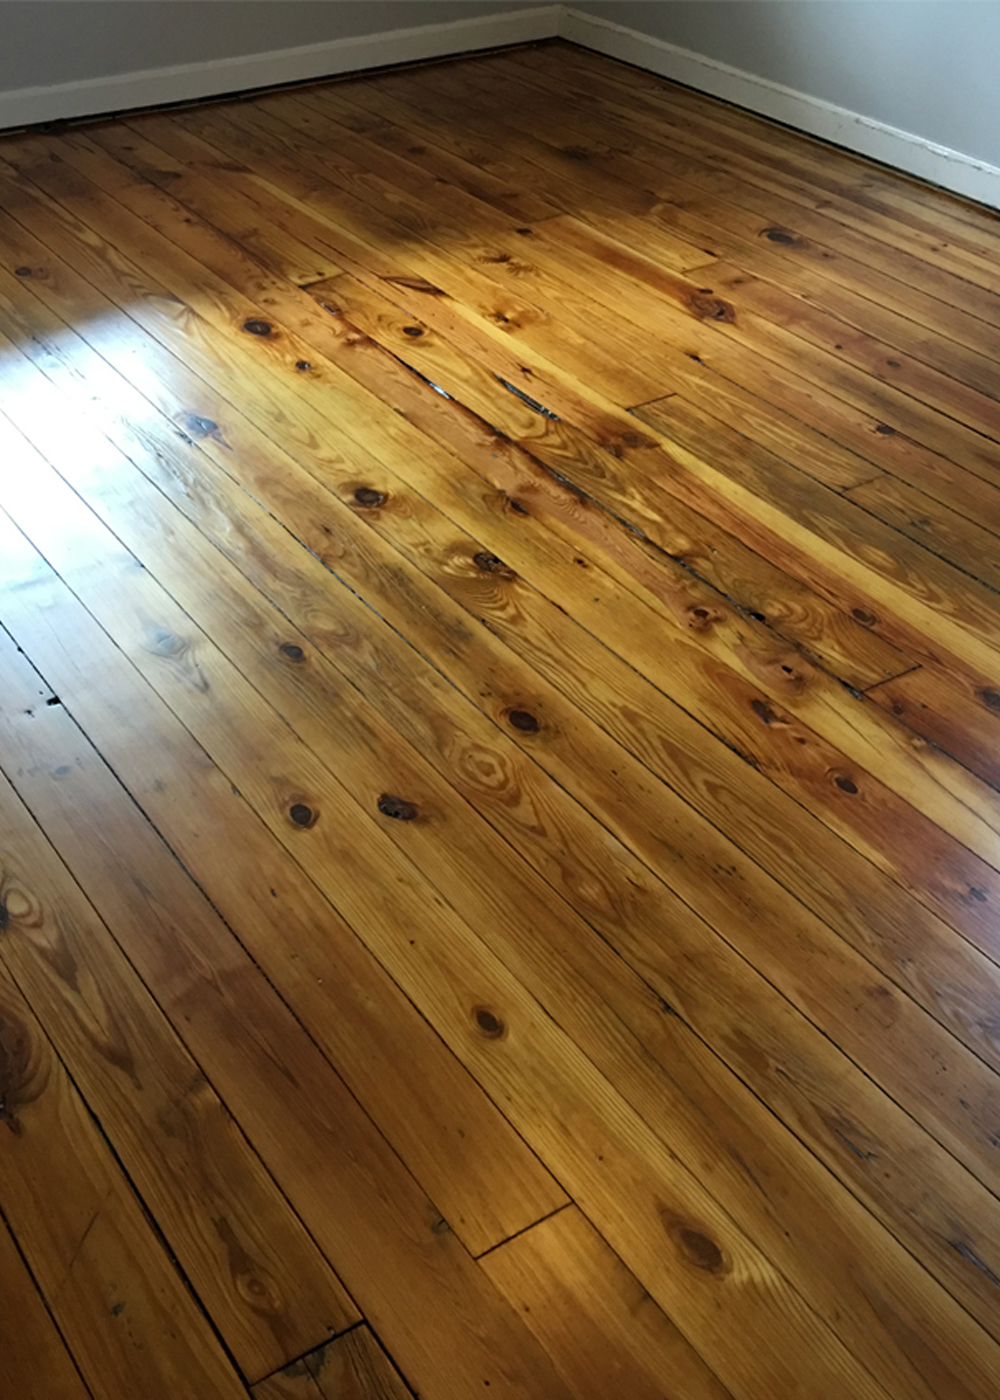 treated wood floor